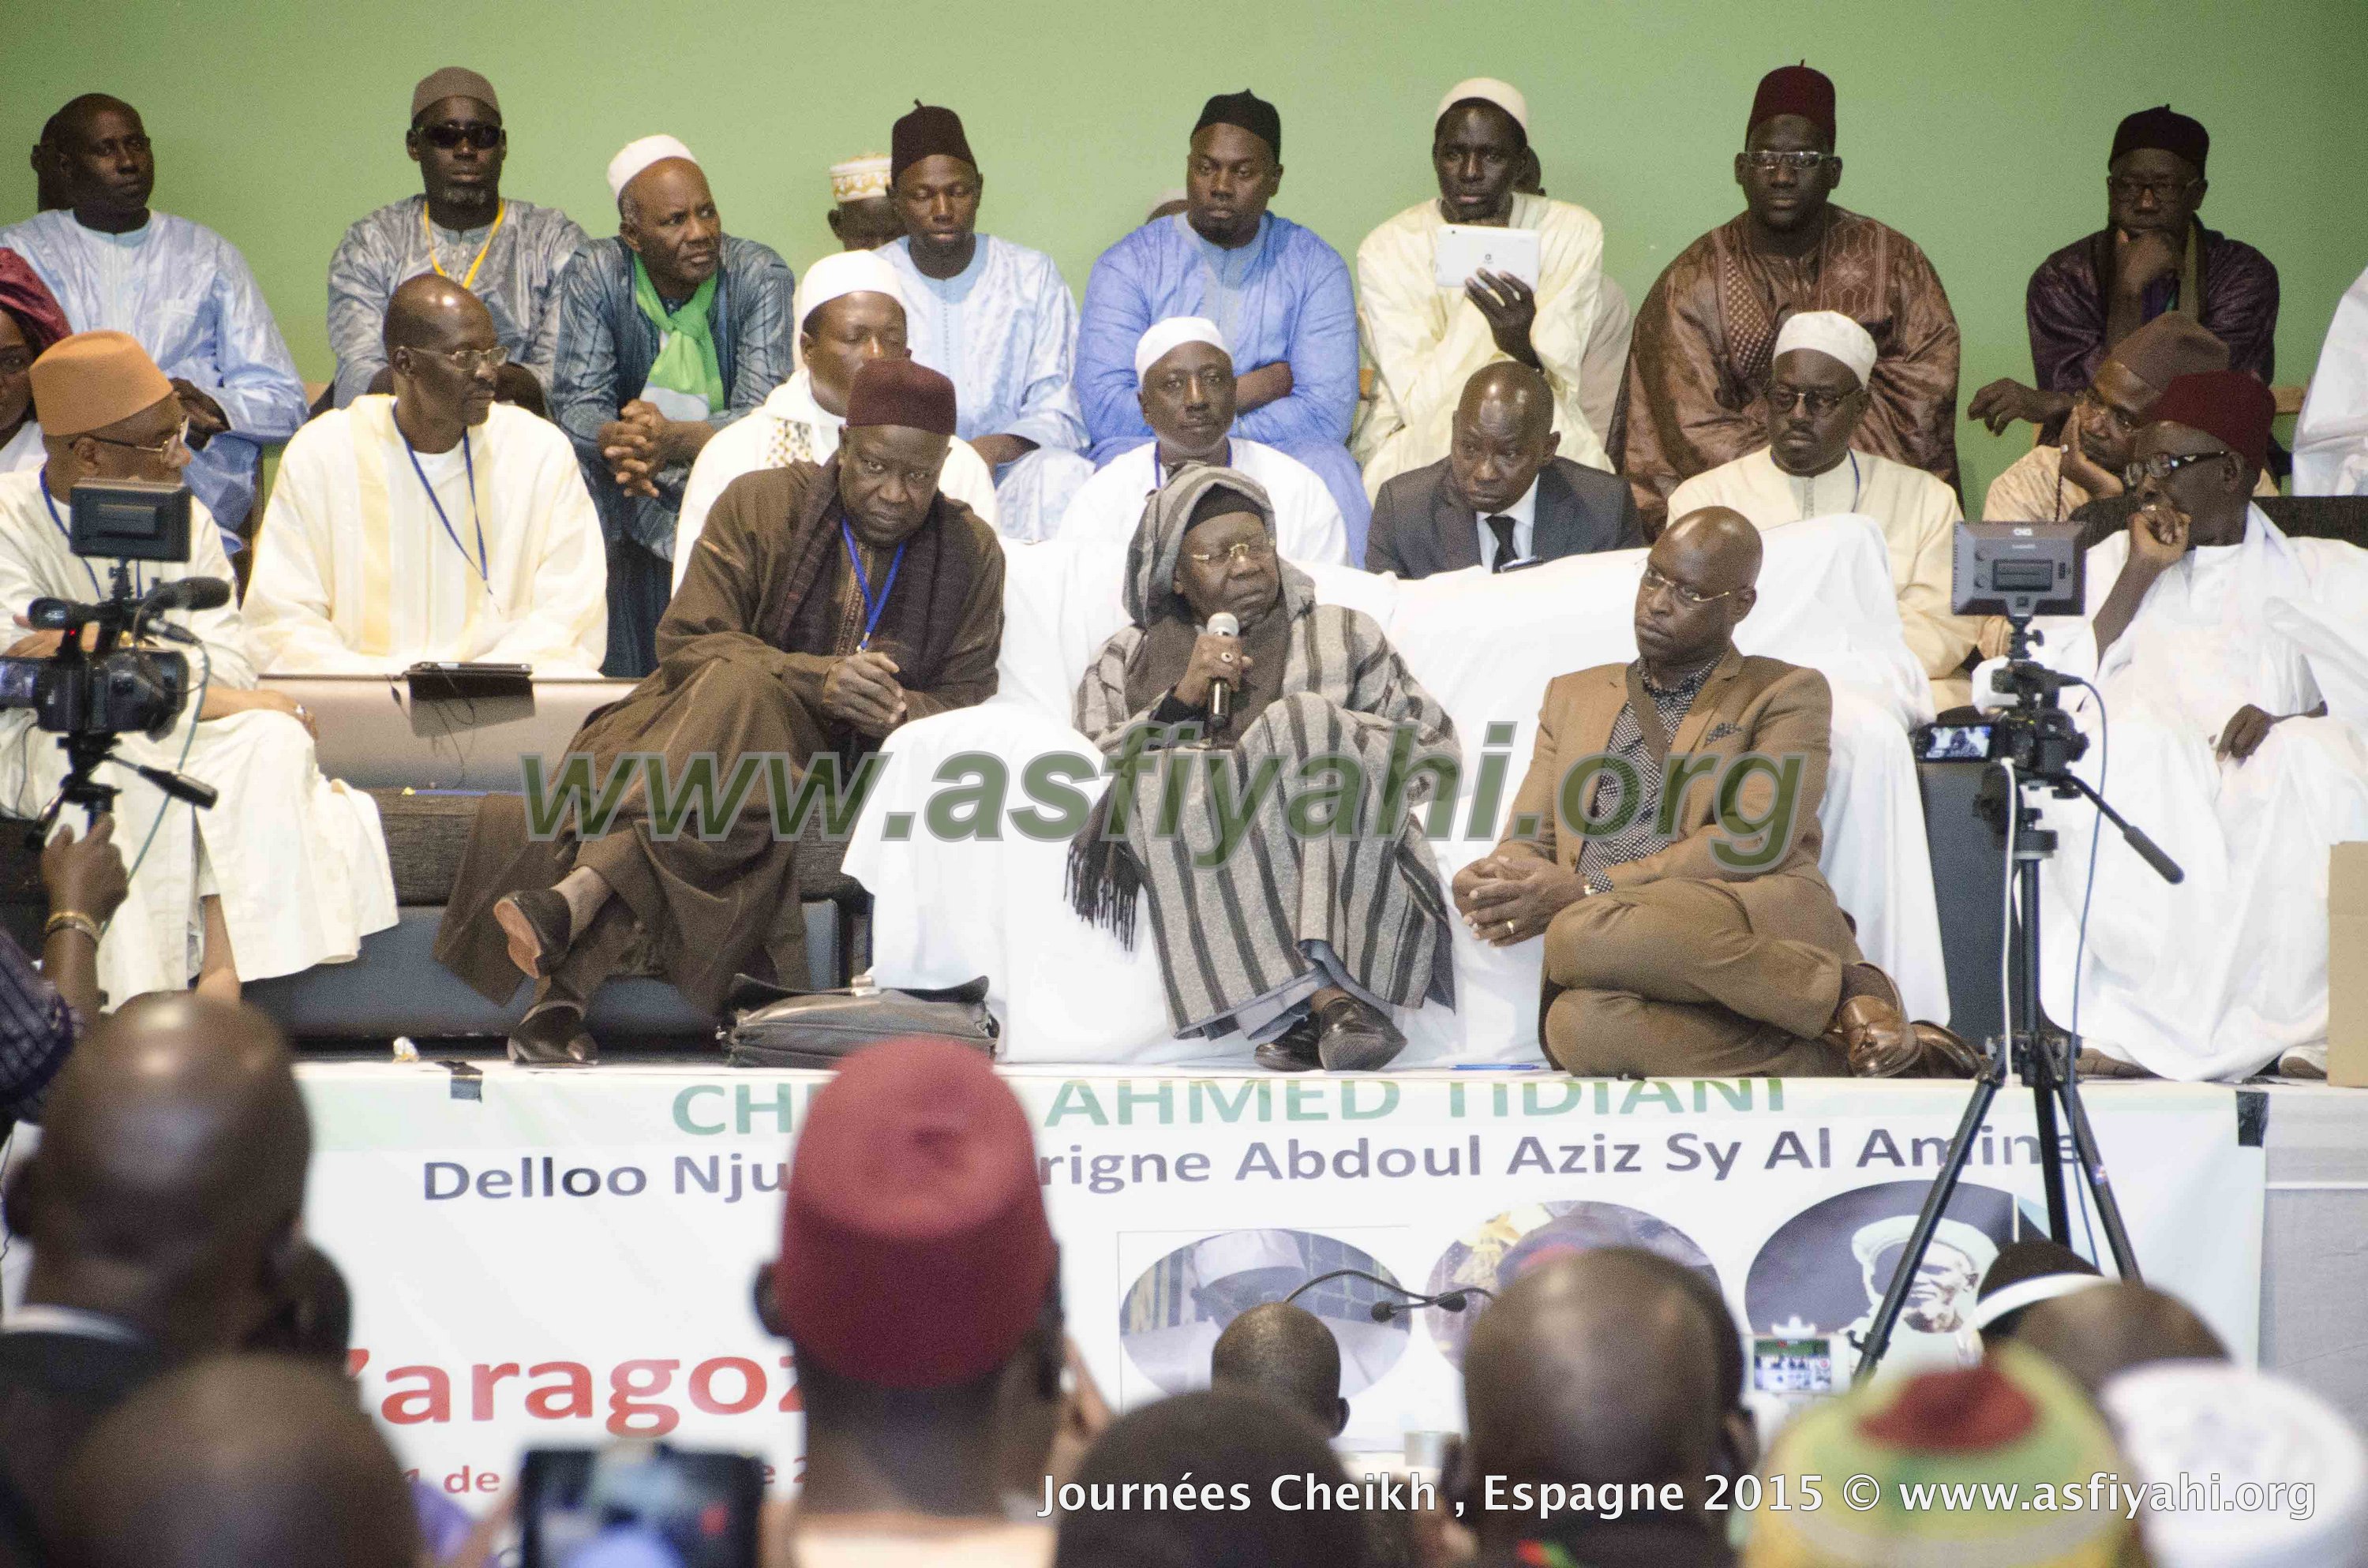 PHOTOS - ESPAGNE - Retour en Images sur la 1ére édition des Journées Cheikh (rta), présidées par Serigne Abdoul Aziz SY Al Amine les 30 , 31 et 1er Nov 2015 à Zaragoza